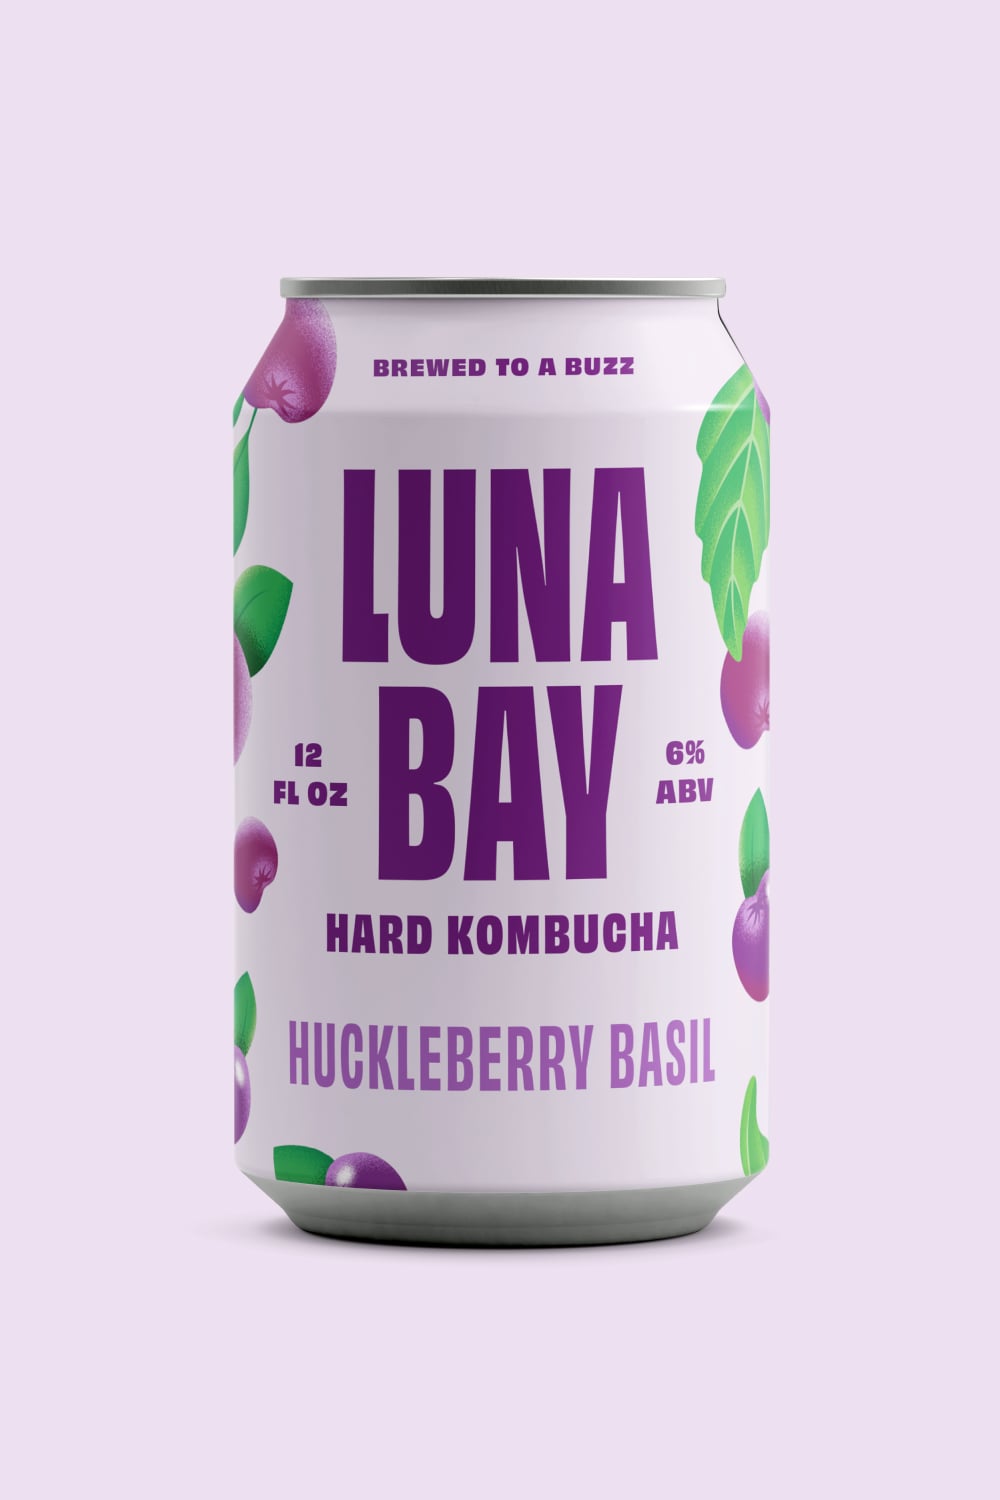 Huckleberry Basil